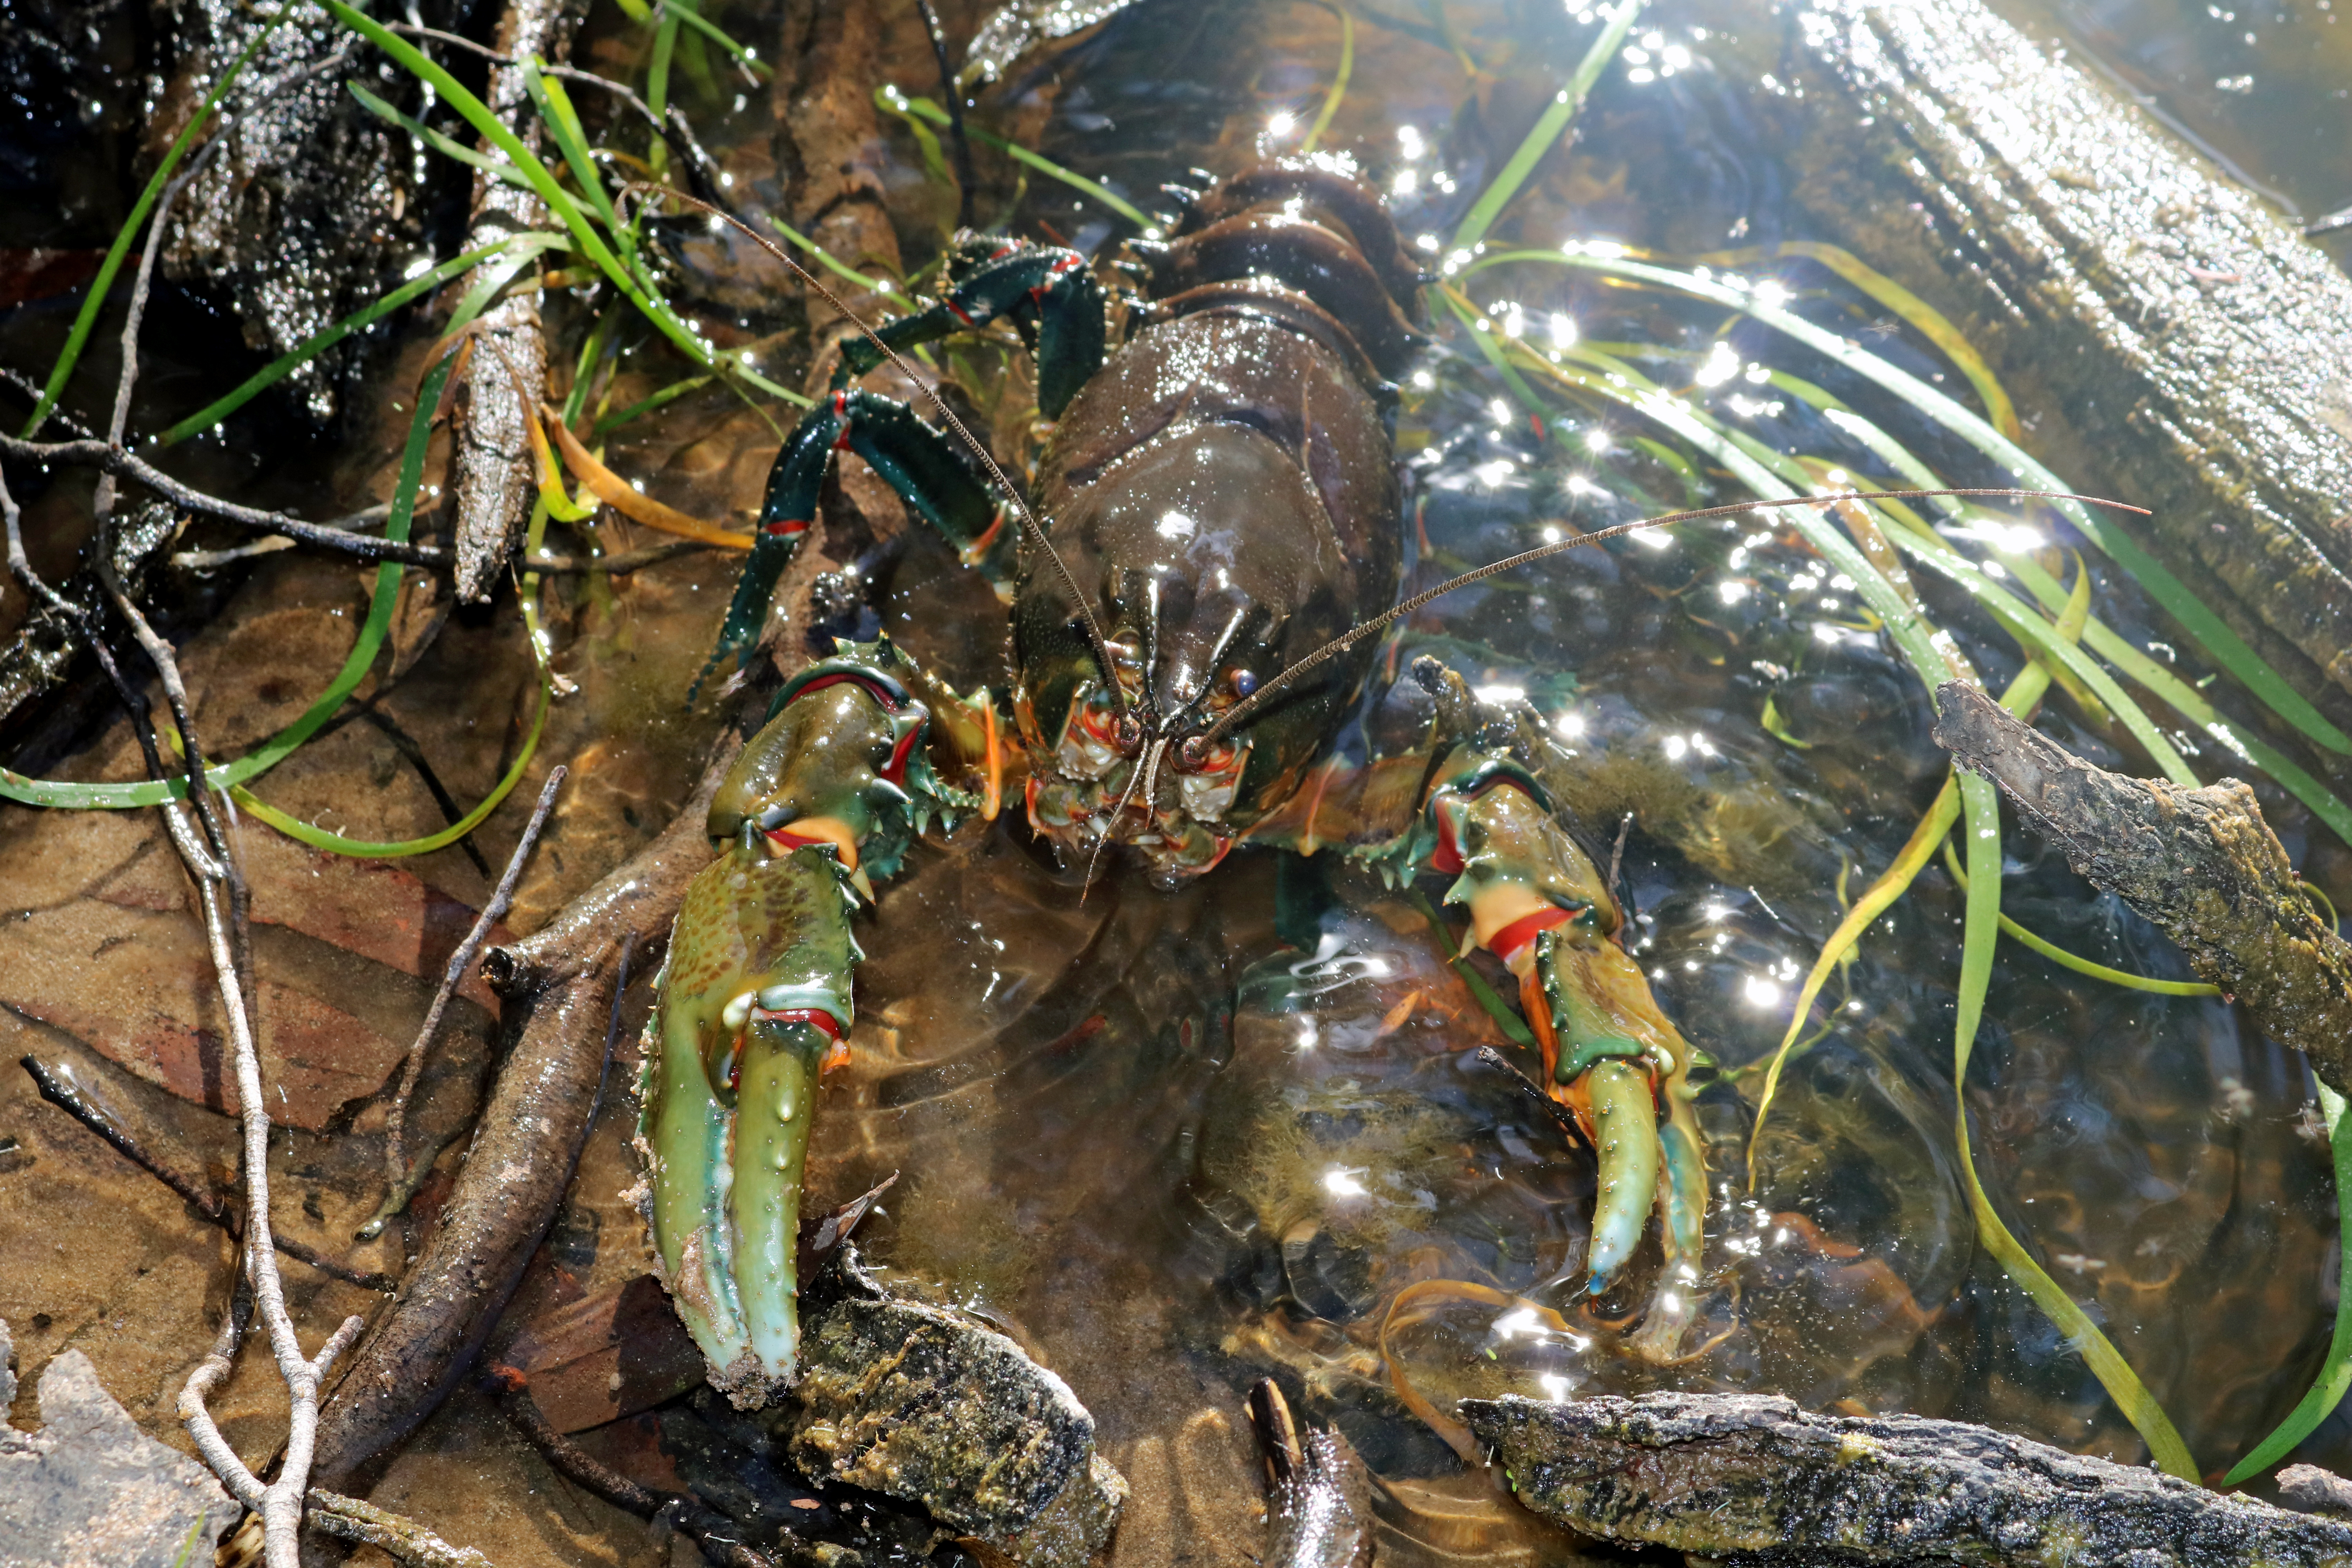 Glenelg spiny crayfish